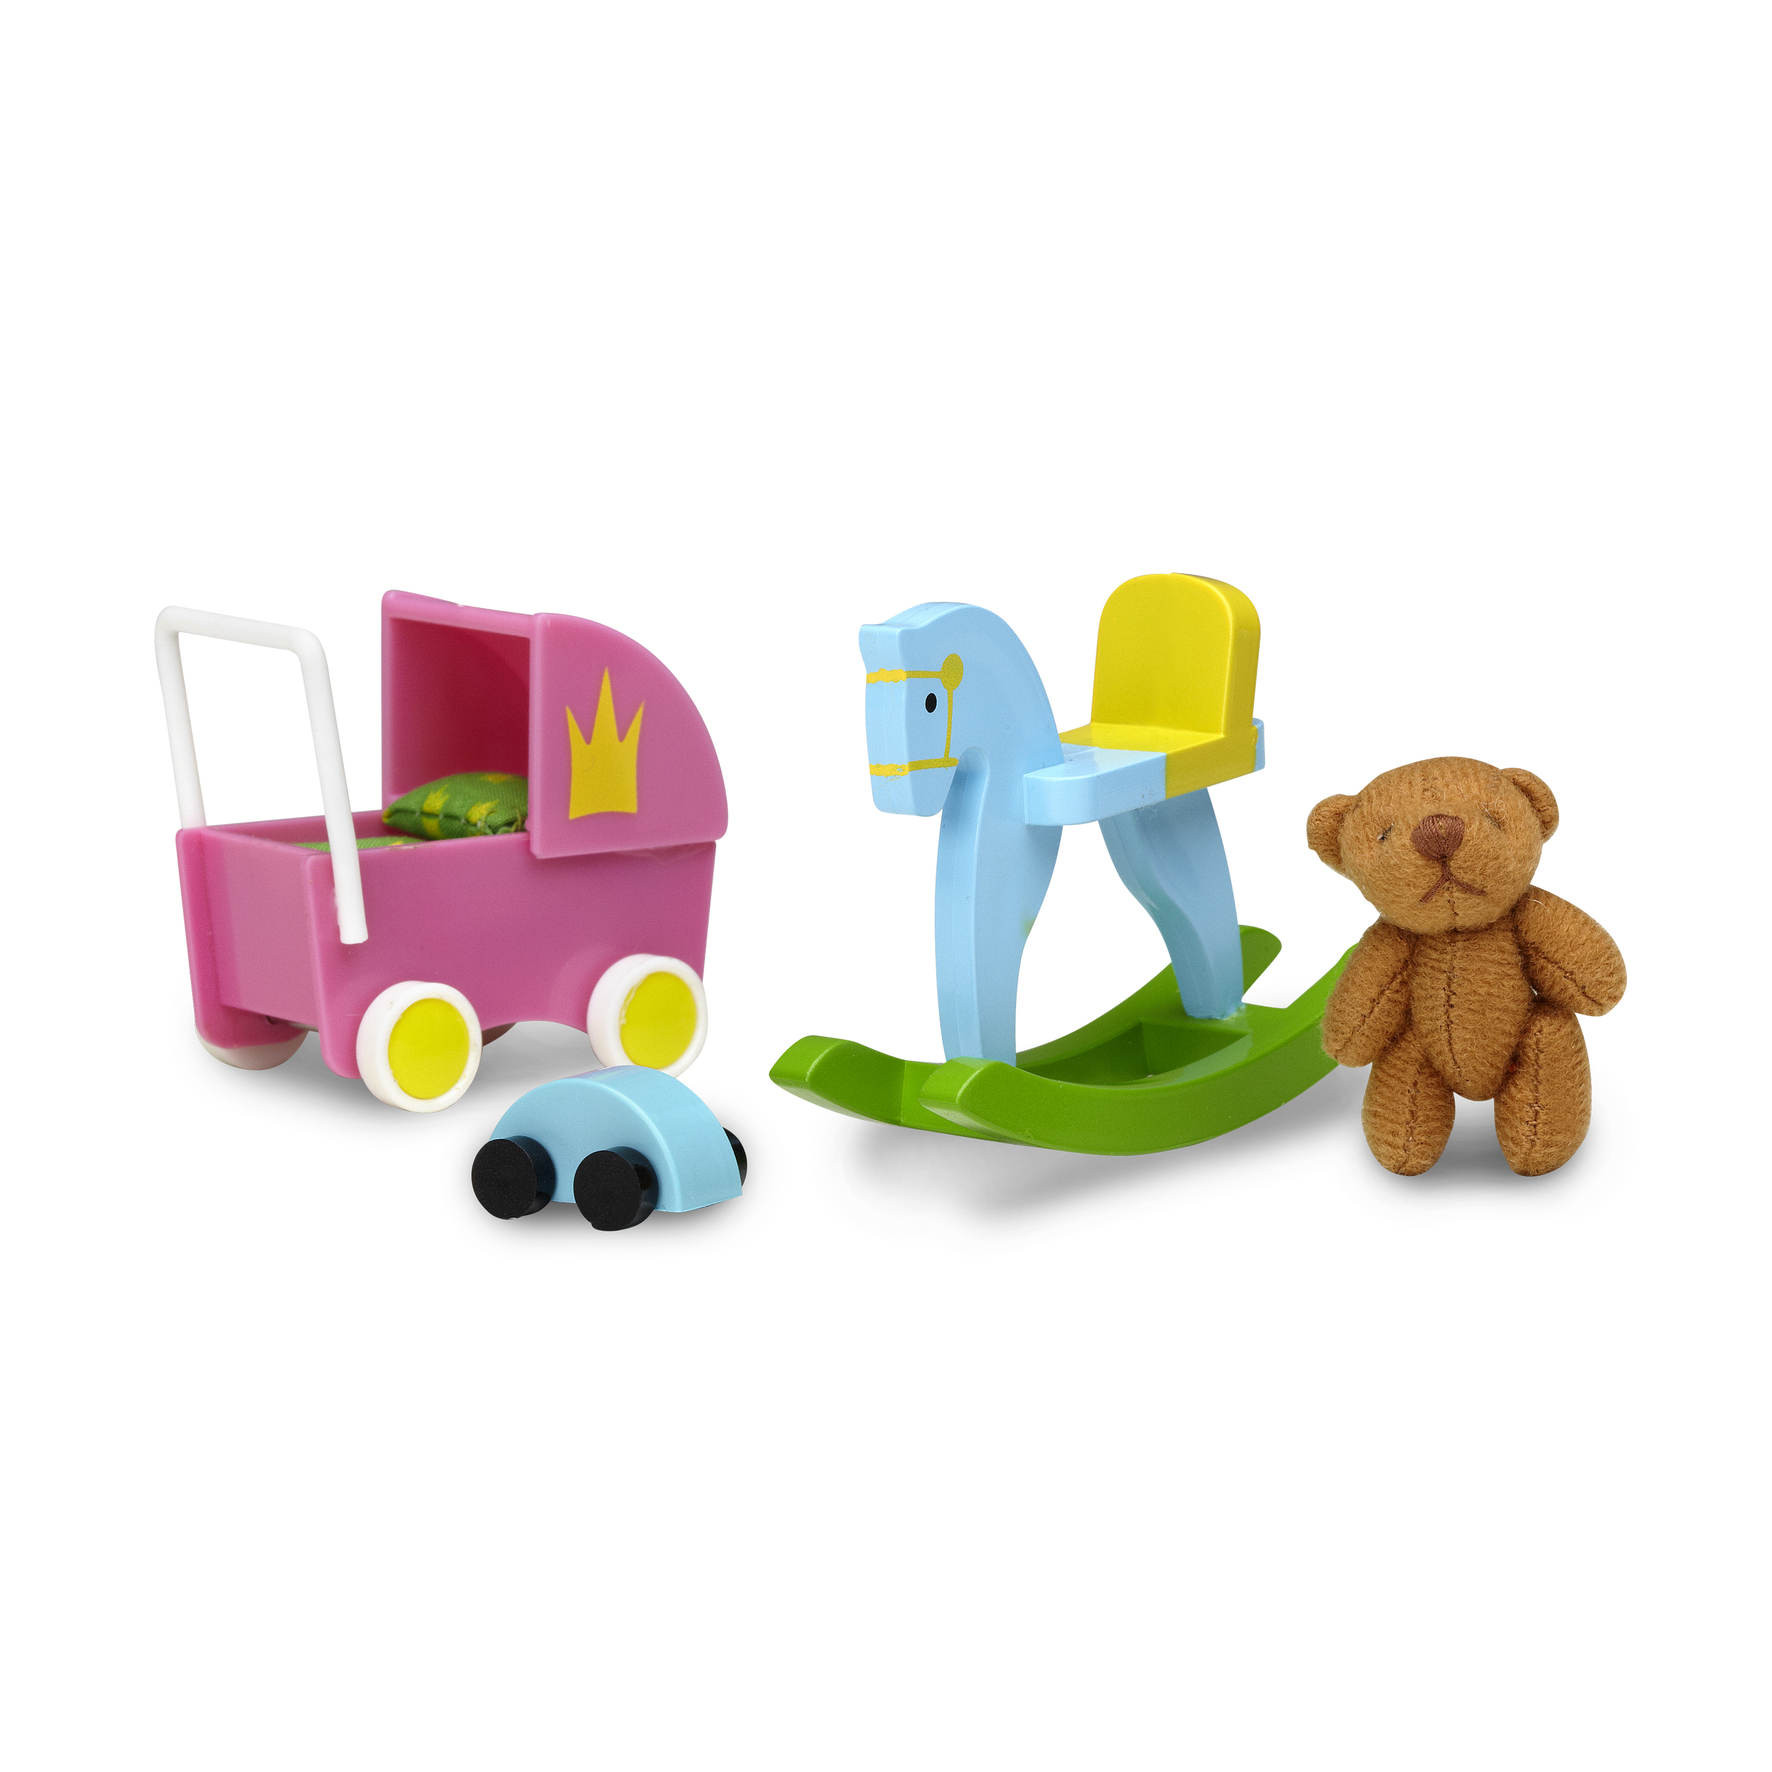 Lundby lundby dollhouse accessories toys